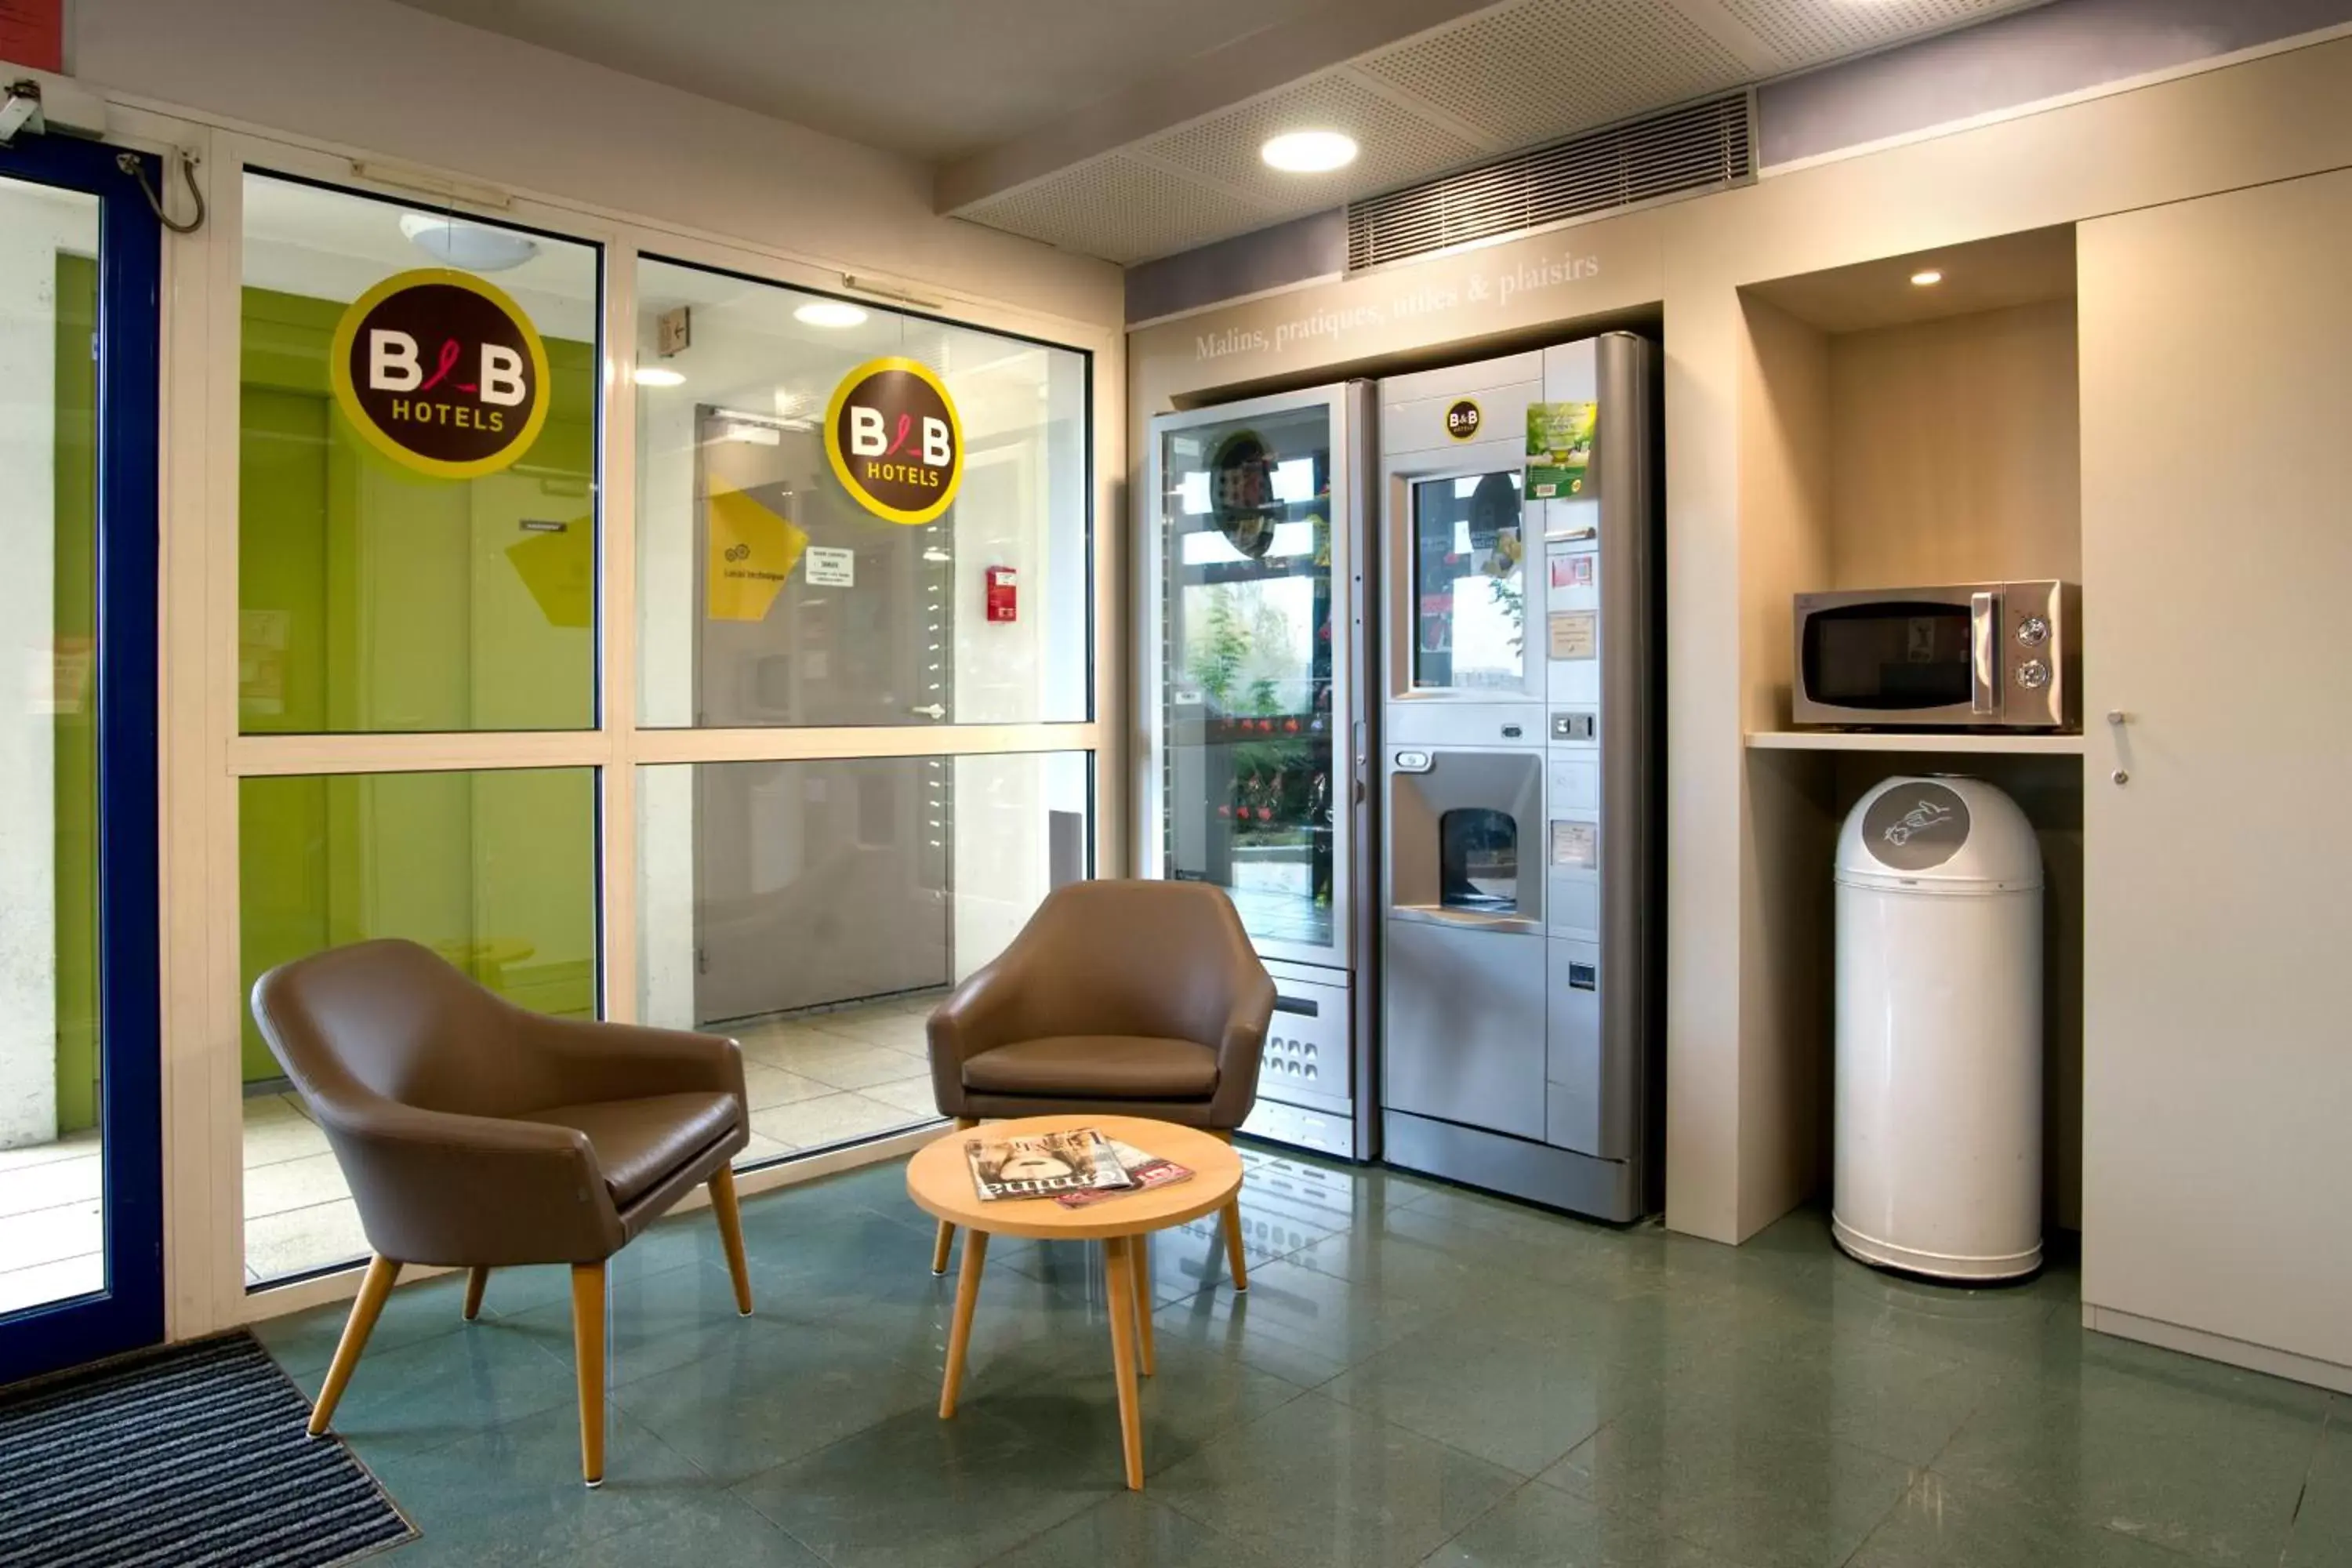 Lobby or reception in B&B HOTEL Moulins